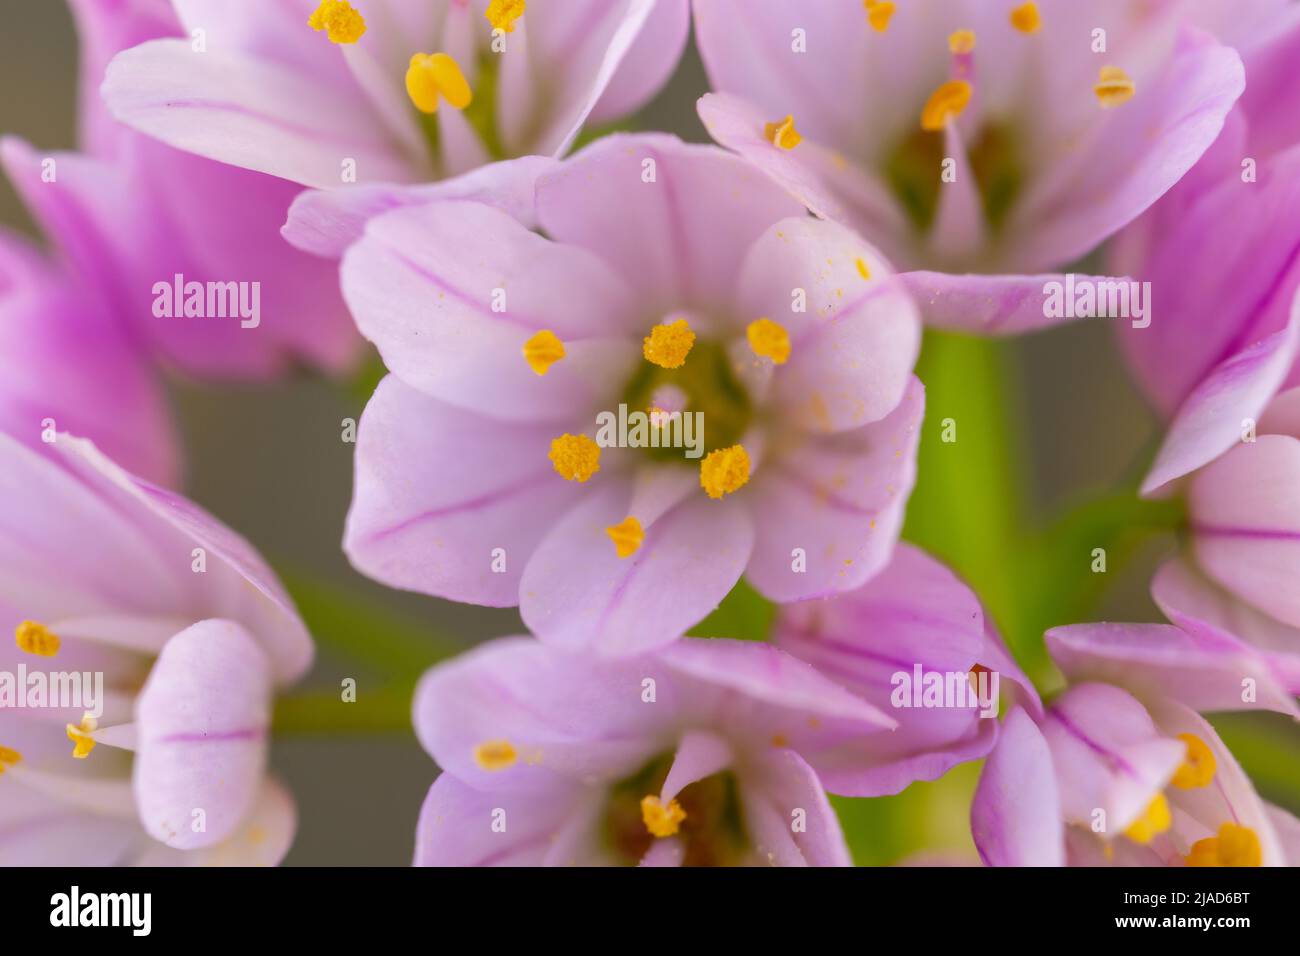 Detail von kleinen Bärlauch-Lauch-Blüten (Allium) mit sanften Farben und gelben Staubgefäßen Stockfoto